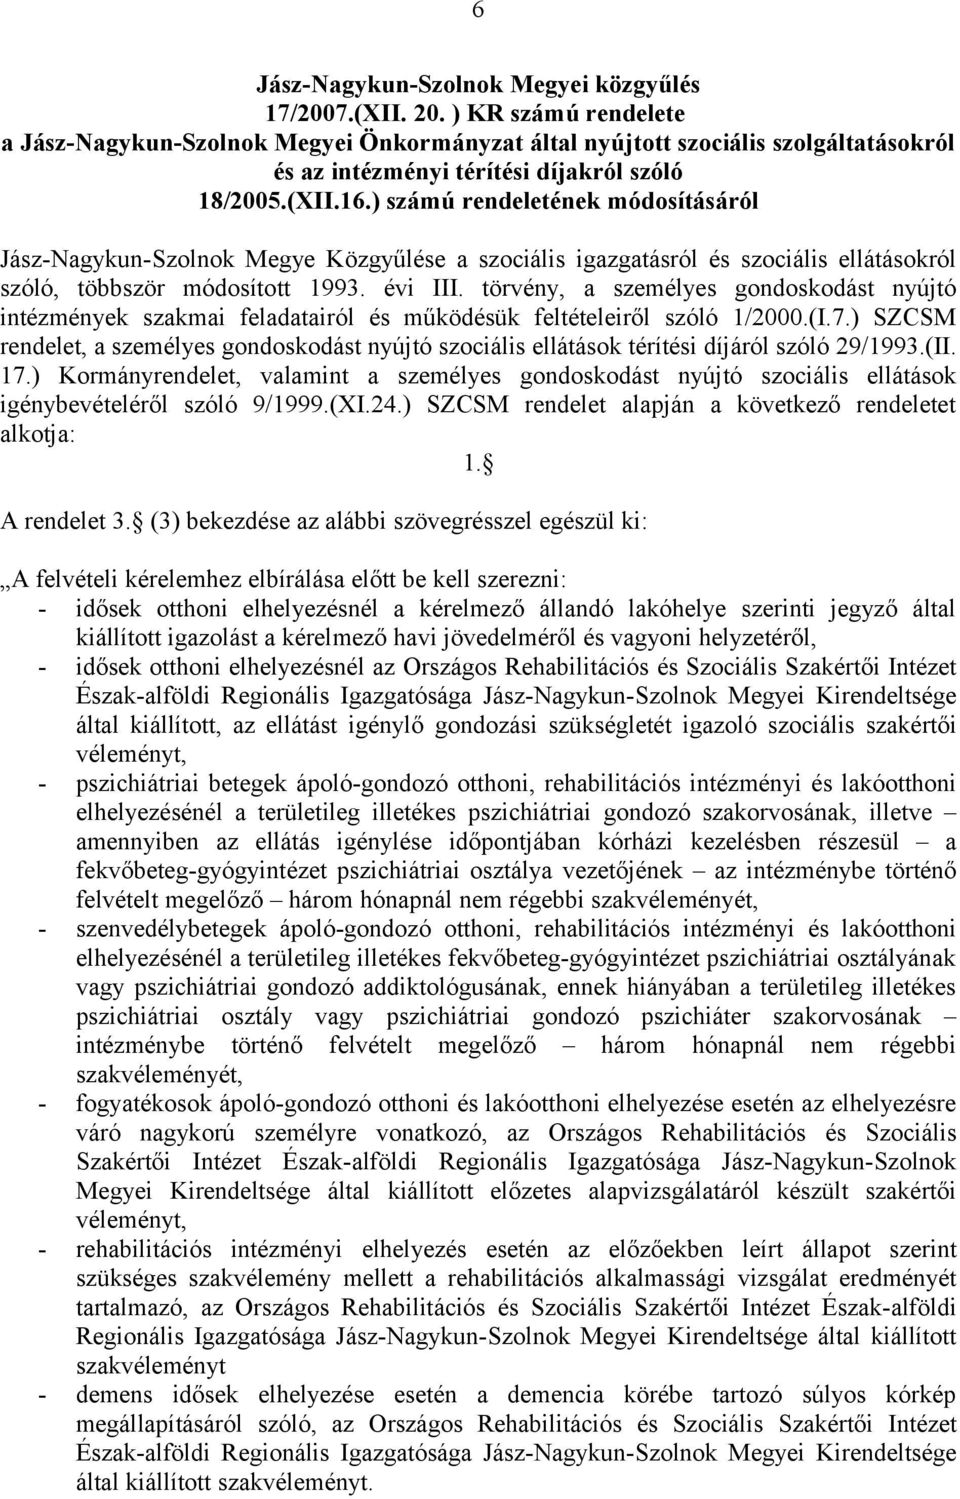 ) számú rendeletének módosításáról Jász-Nagykun-Szolnok Megye Közgyűlése a szociális igazgatásról és szociális ellátásokról szóló, többször módosított 1993. évi III.